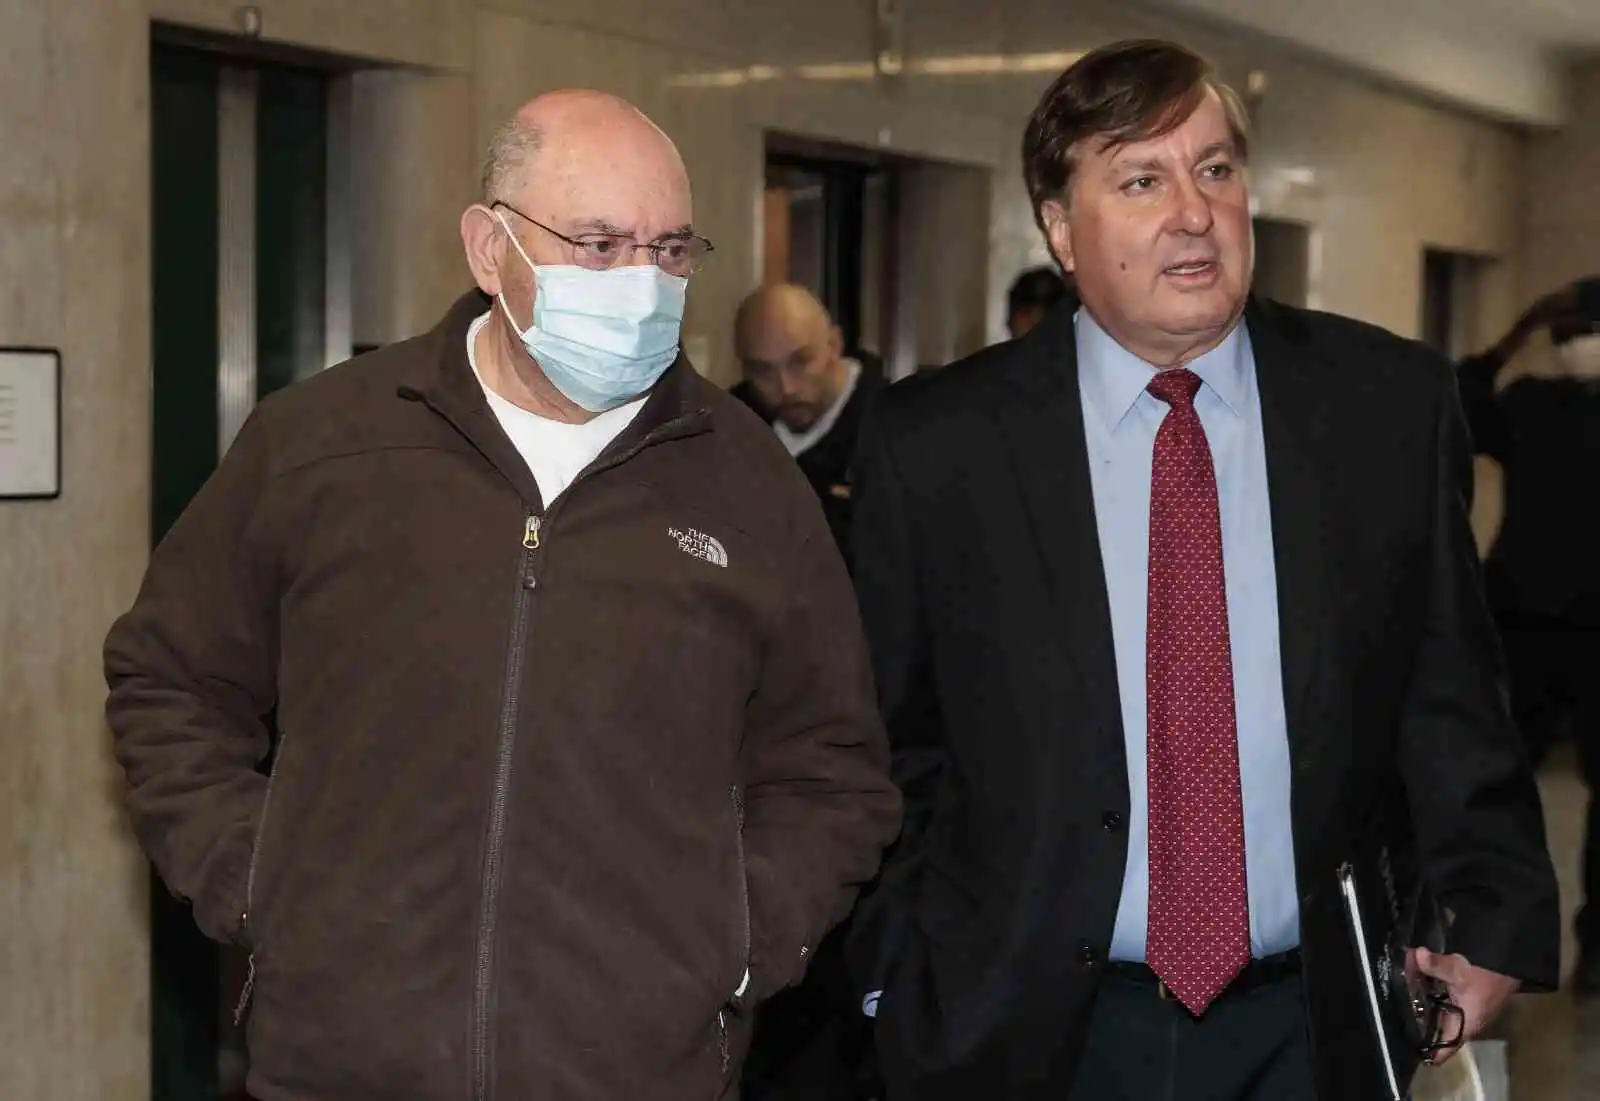 Trump Organization'ın Finans Direktörü Weisselberg 5 ay hapis cezasına çarptırıldı
